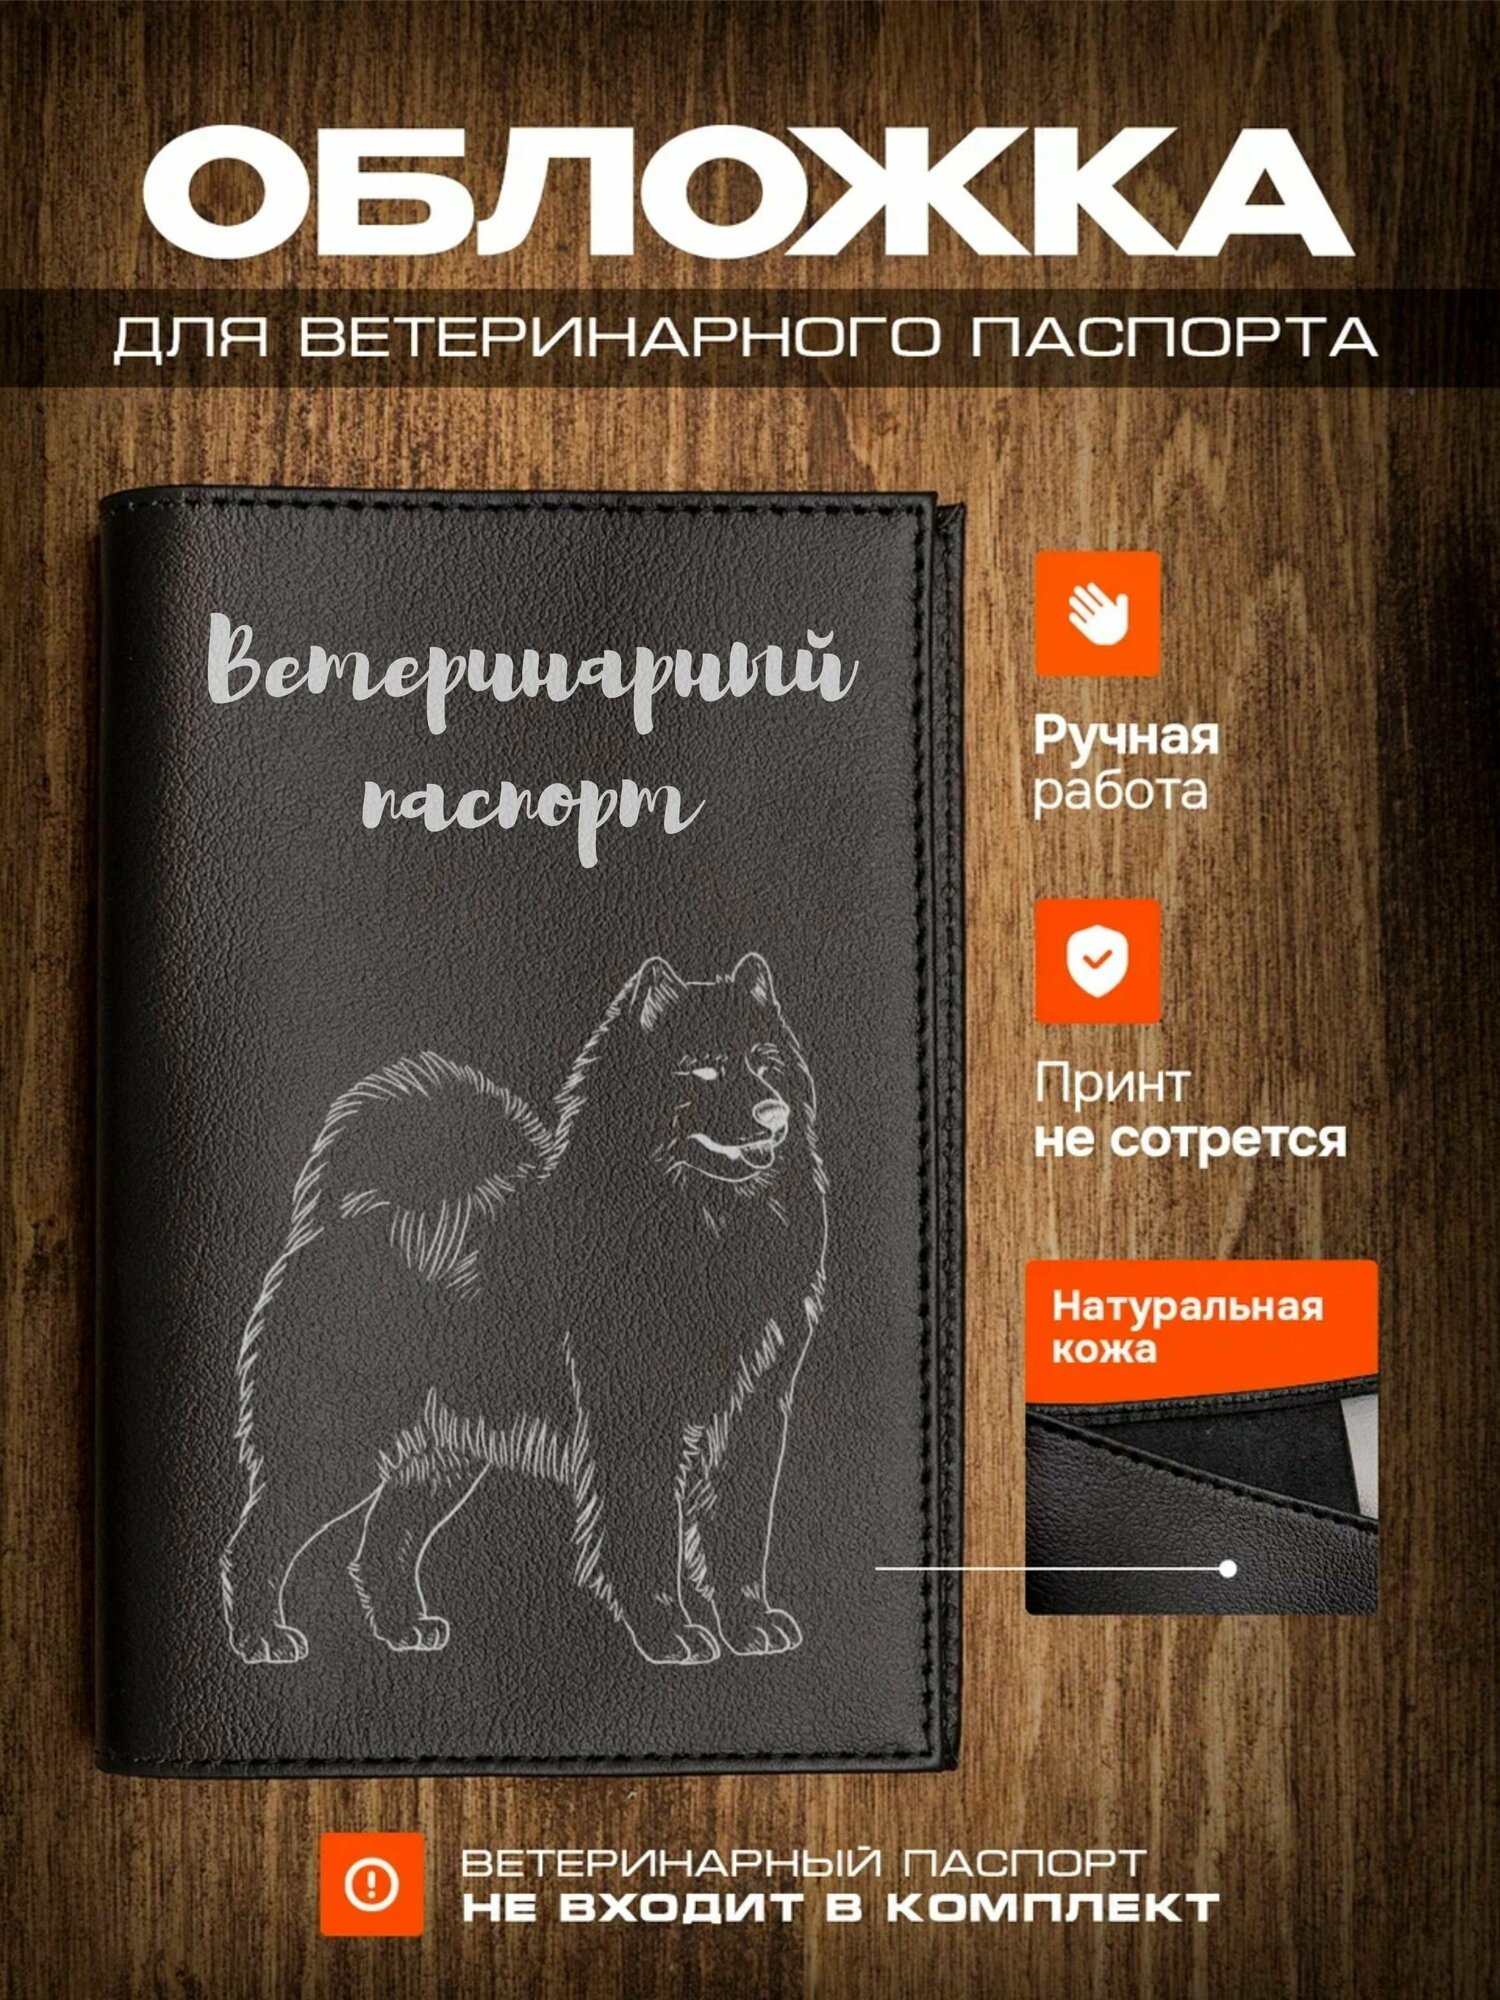 Обложка на ветеринарный паспорт для собак Самоедская собака